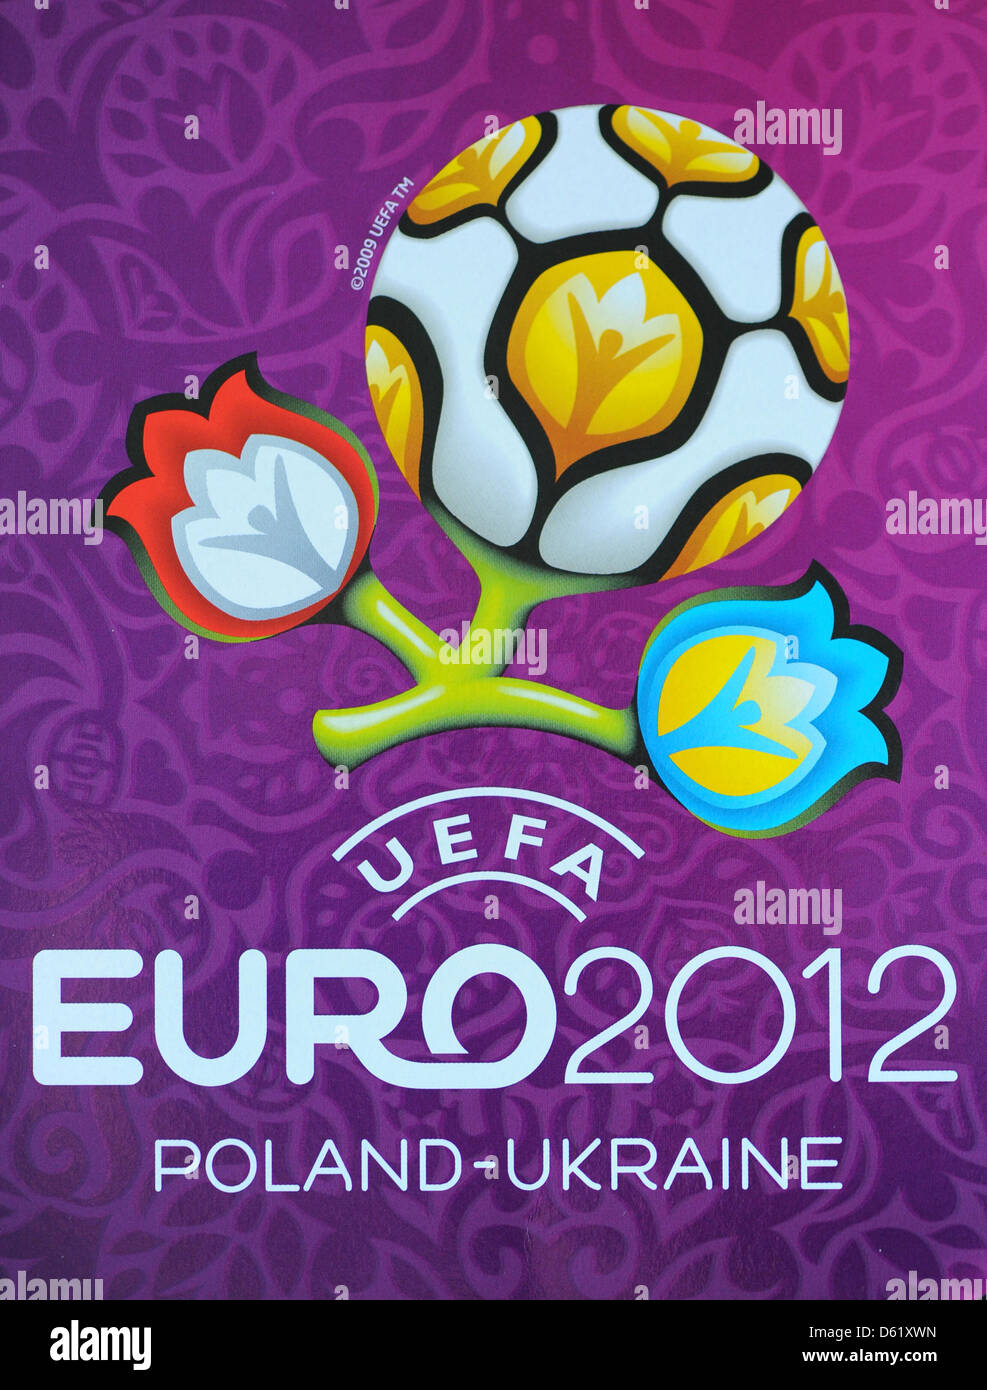 Le logo de l'UEFA EURO 2012 de football en Pologne et l'Ukraine est fweatureed sur l'autocollant officiel de l'album Panini à Berlin, Allemagne, 02 mai 2012. Photo : Jens Kalaene Banque D'Images